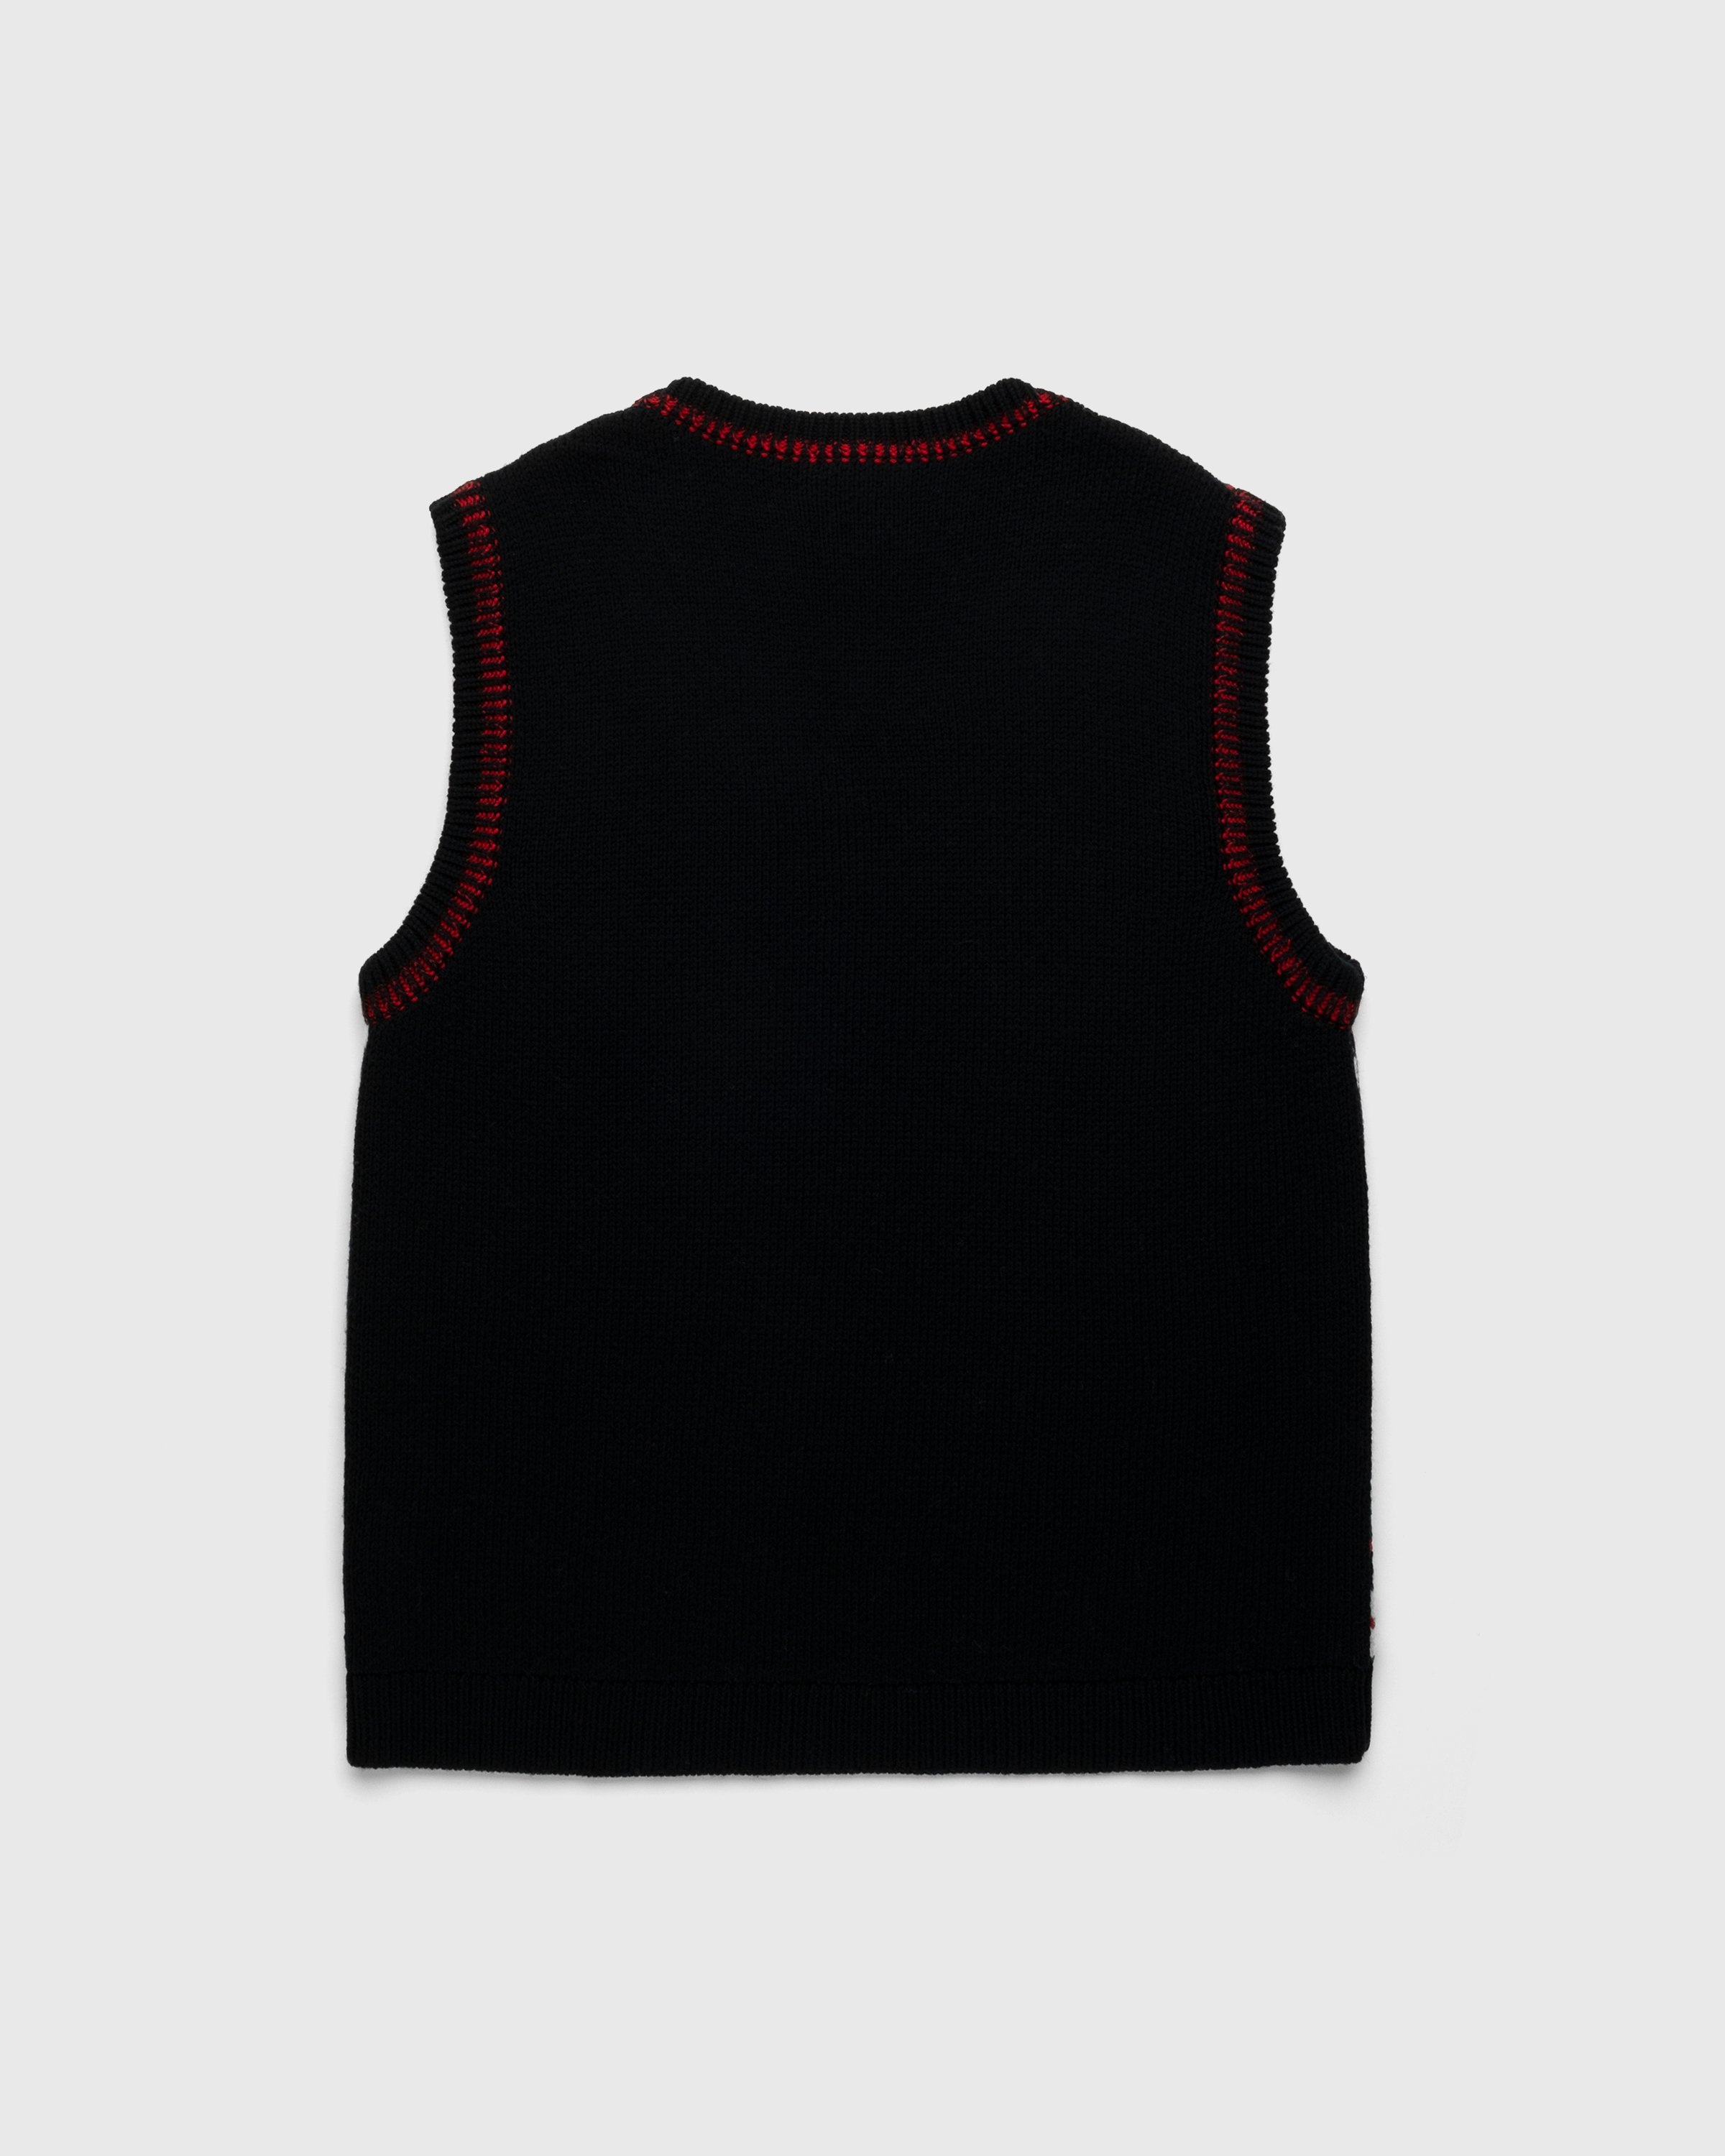 Marine Serre – Harlequeen Pullover V-Neck Black - Knitwear - Black - Image 2